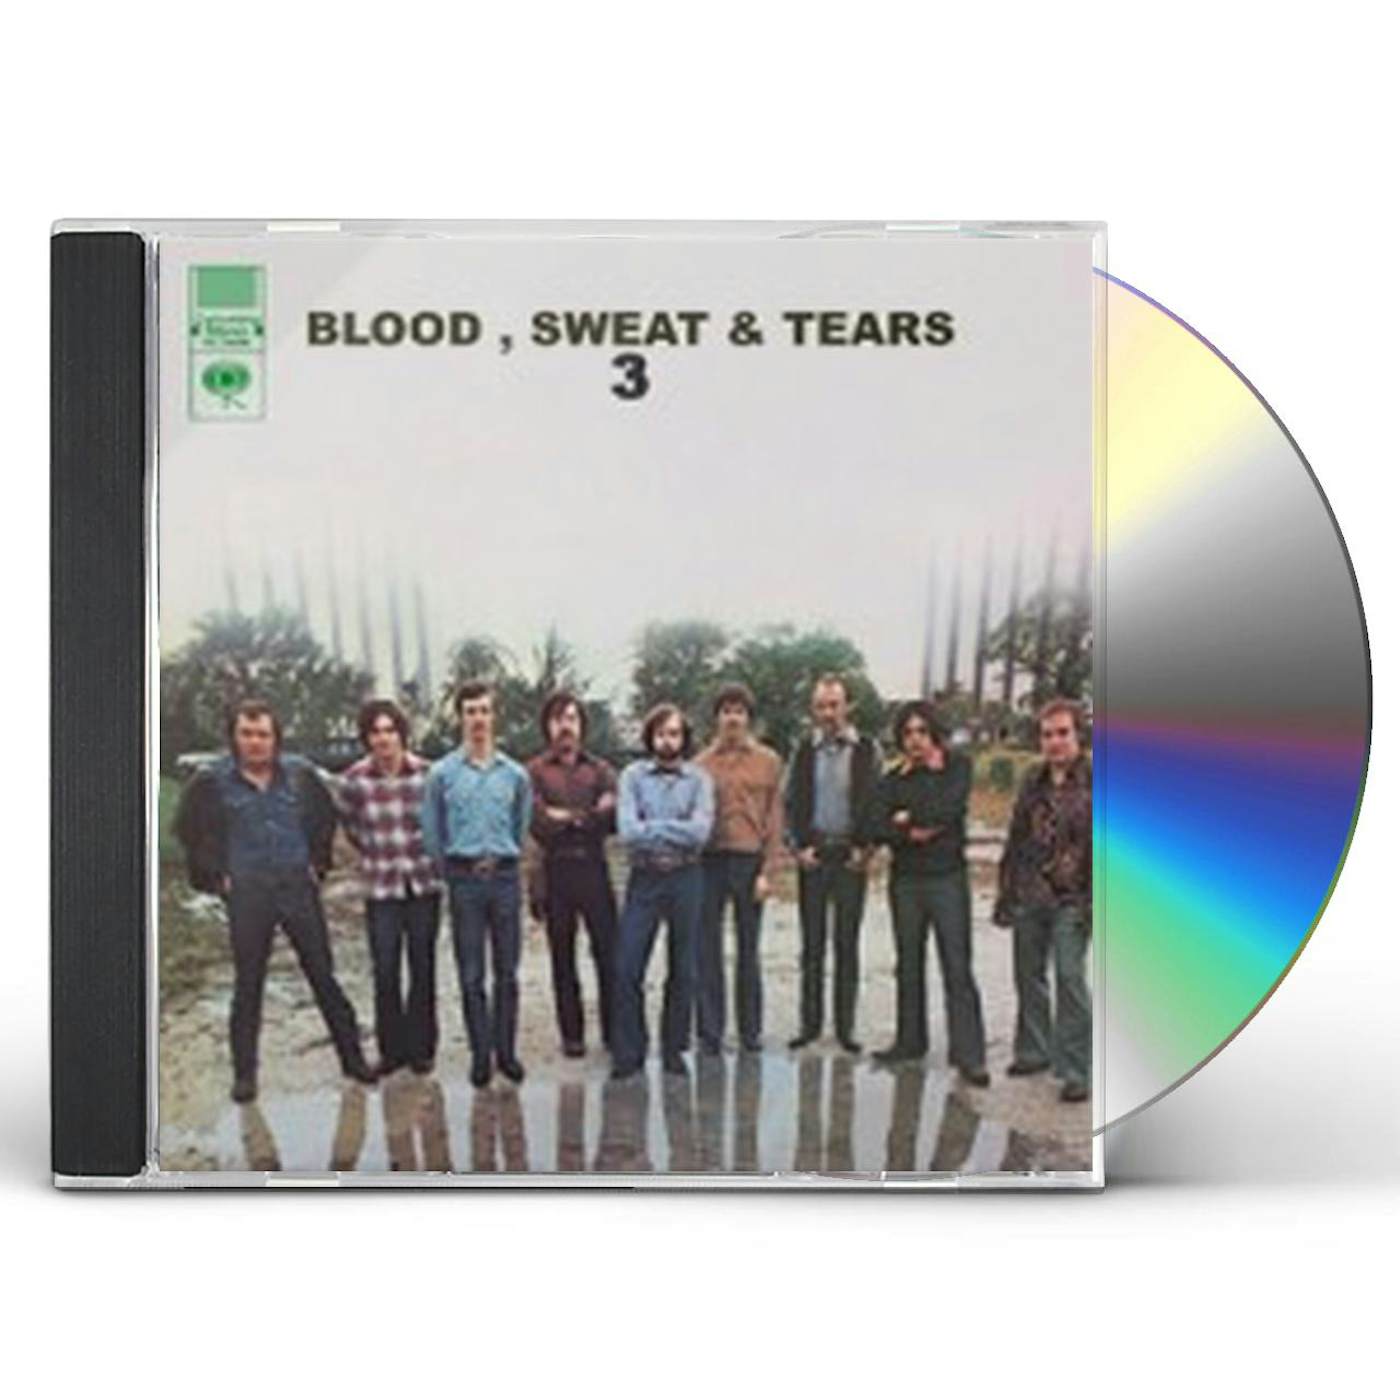 Blood, Sweat & Tears 3 CD